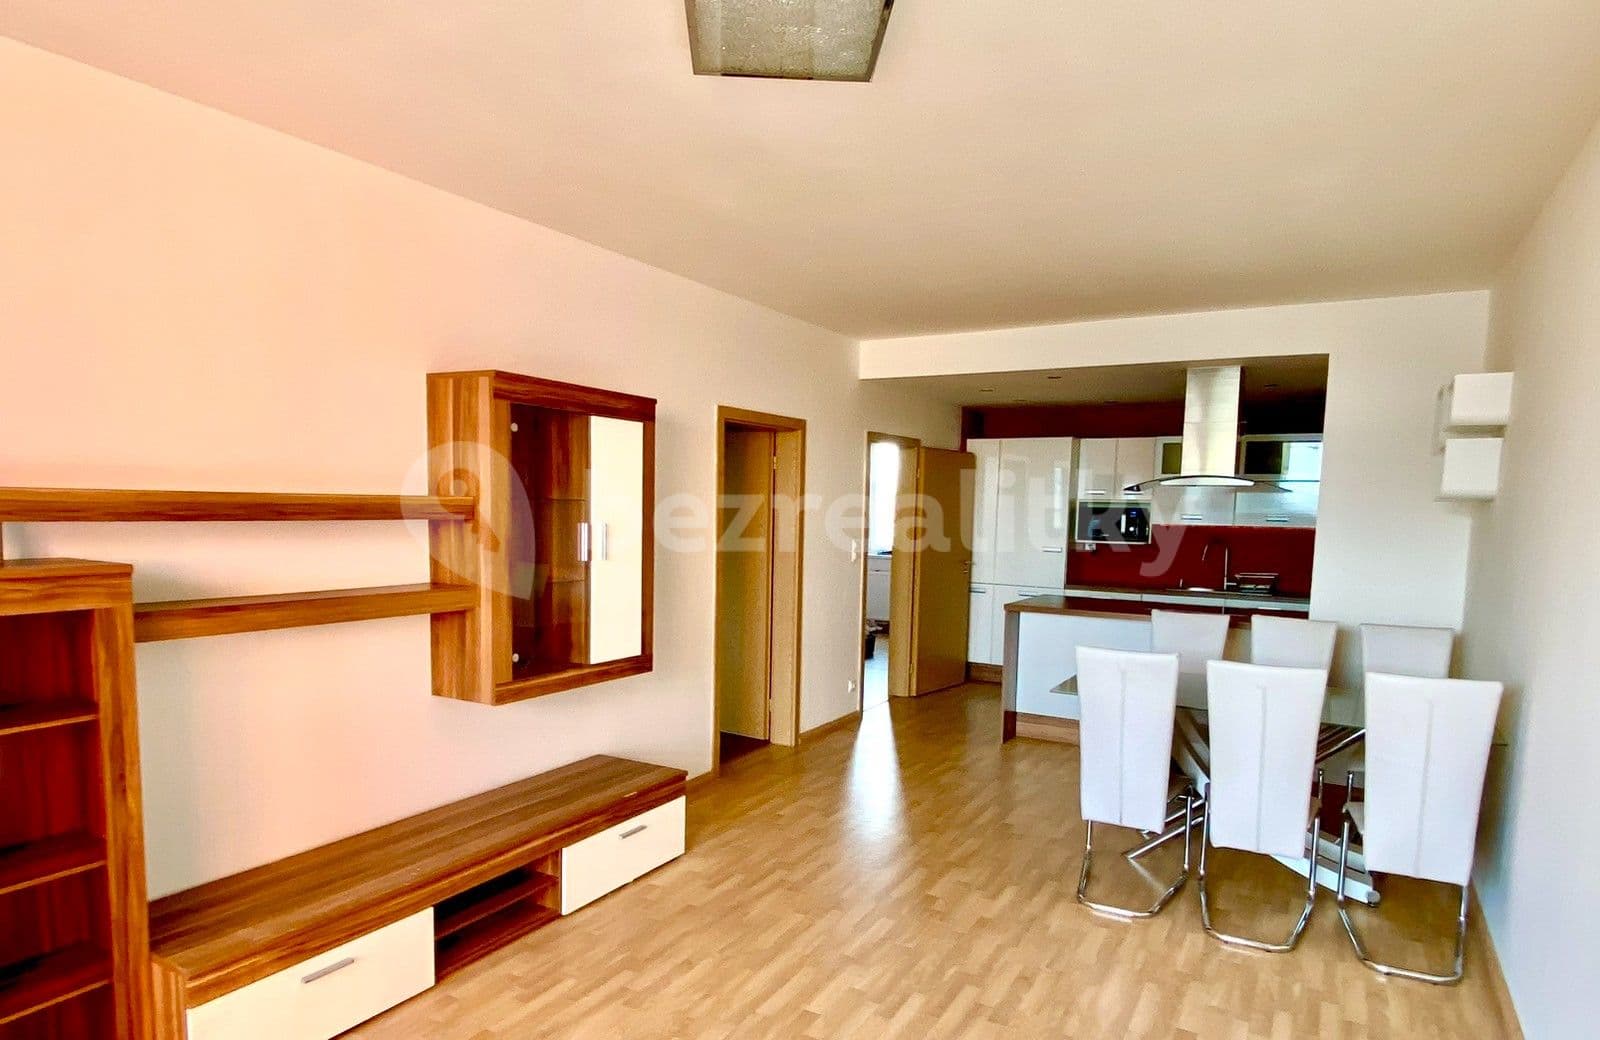 1 bedroom with open-plan kitchen flat to rent, 64 m², Svitákova, Prague, Prague